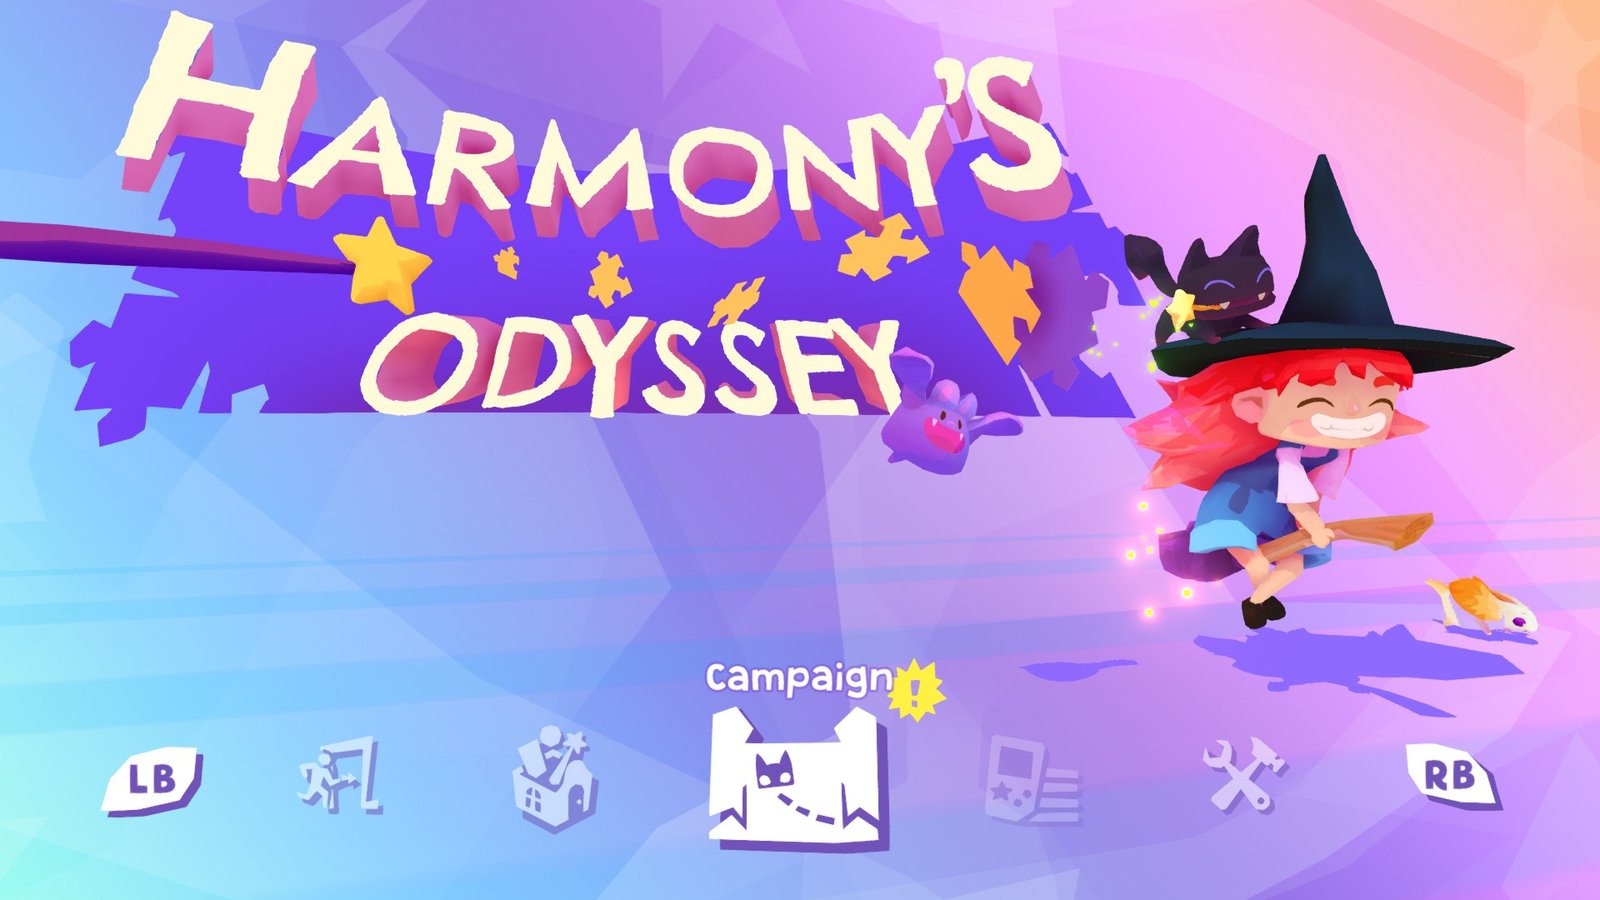 harmony's odissey